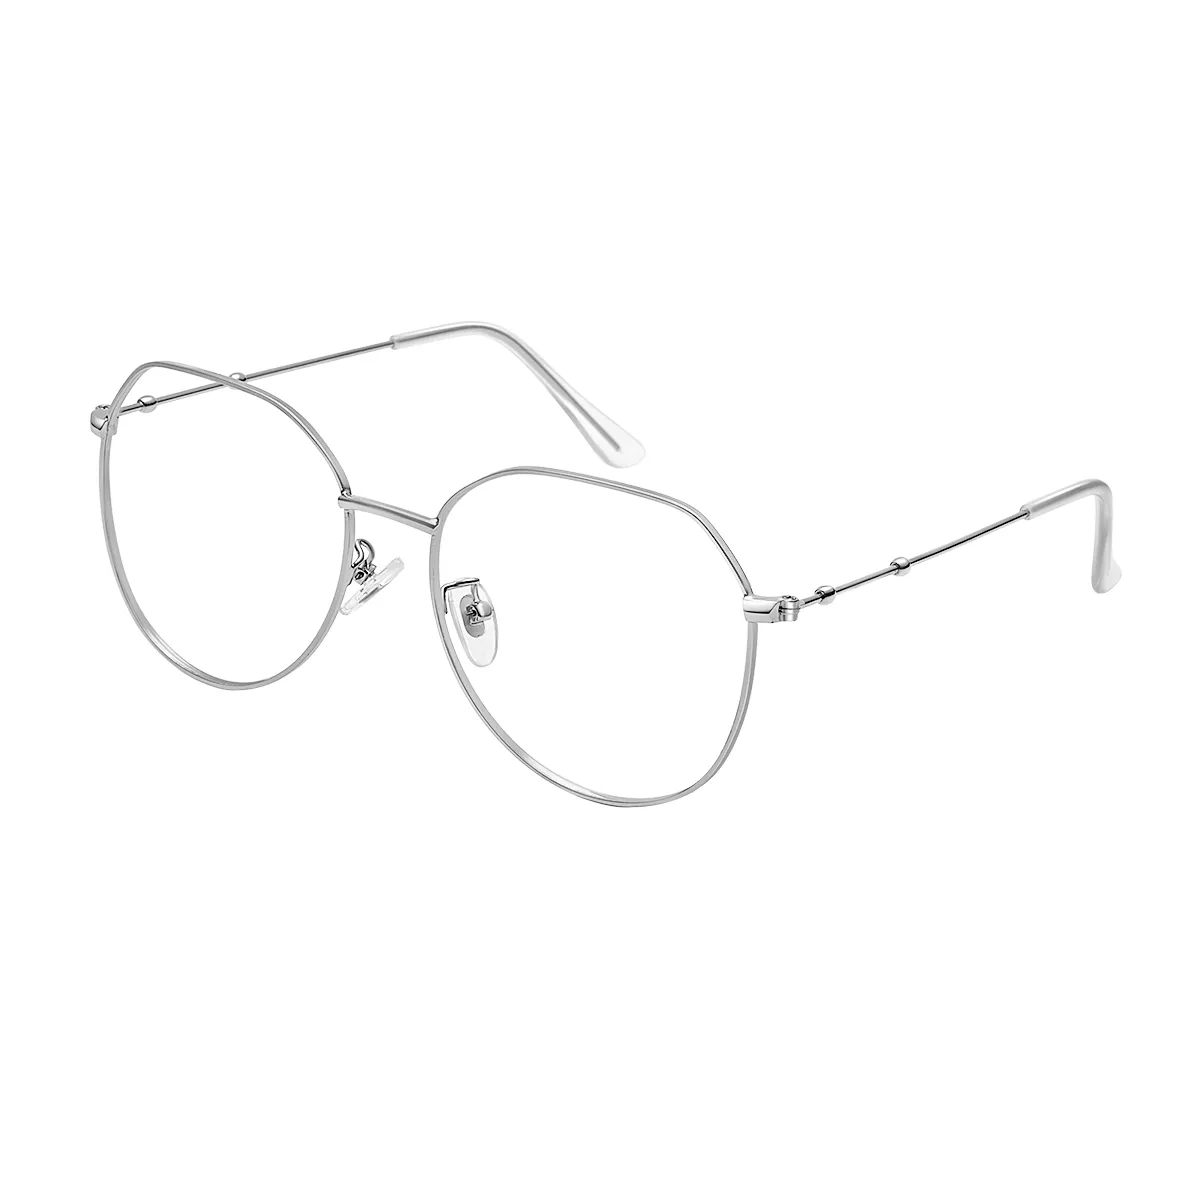 Arkle - Aviator Silver Glasses for Men & Women